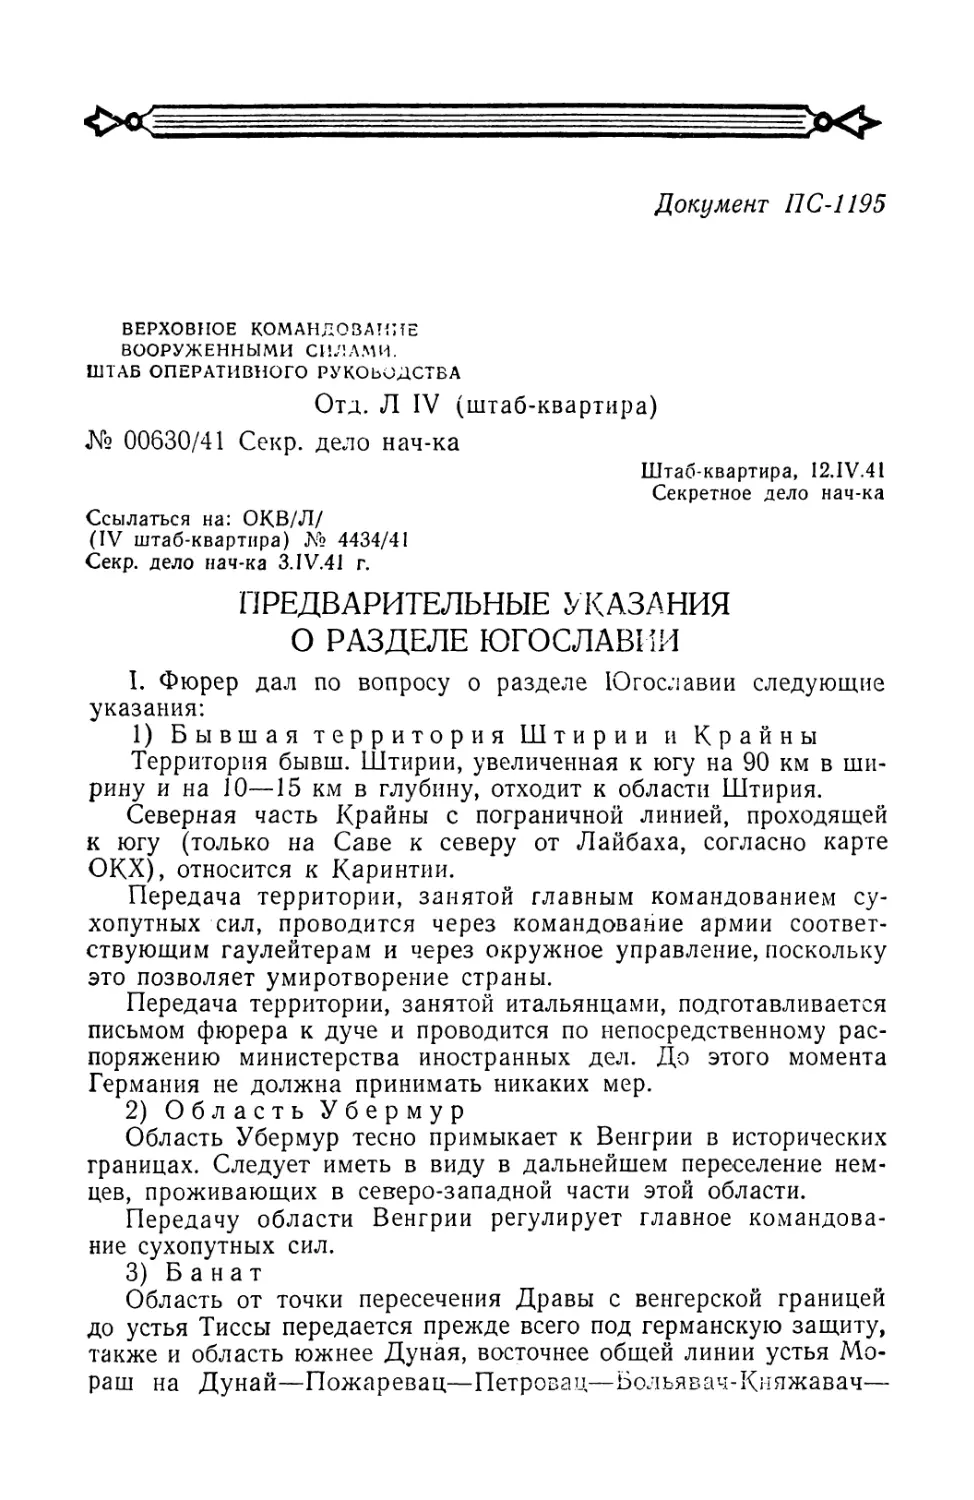 Секретная директива верховного командования вооруженными силами № 00630/41 от 12 апреля 1941 г. о разделе Югославии